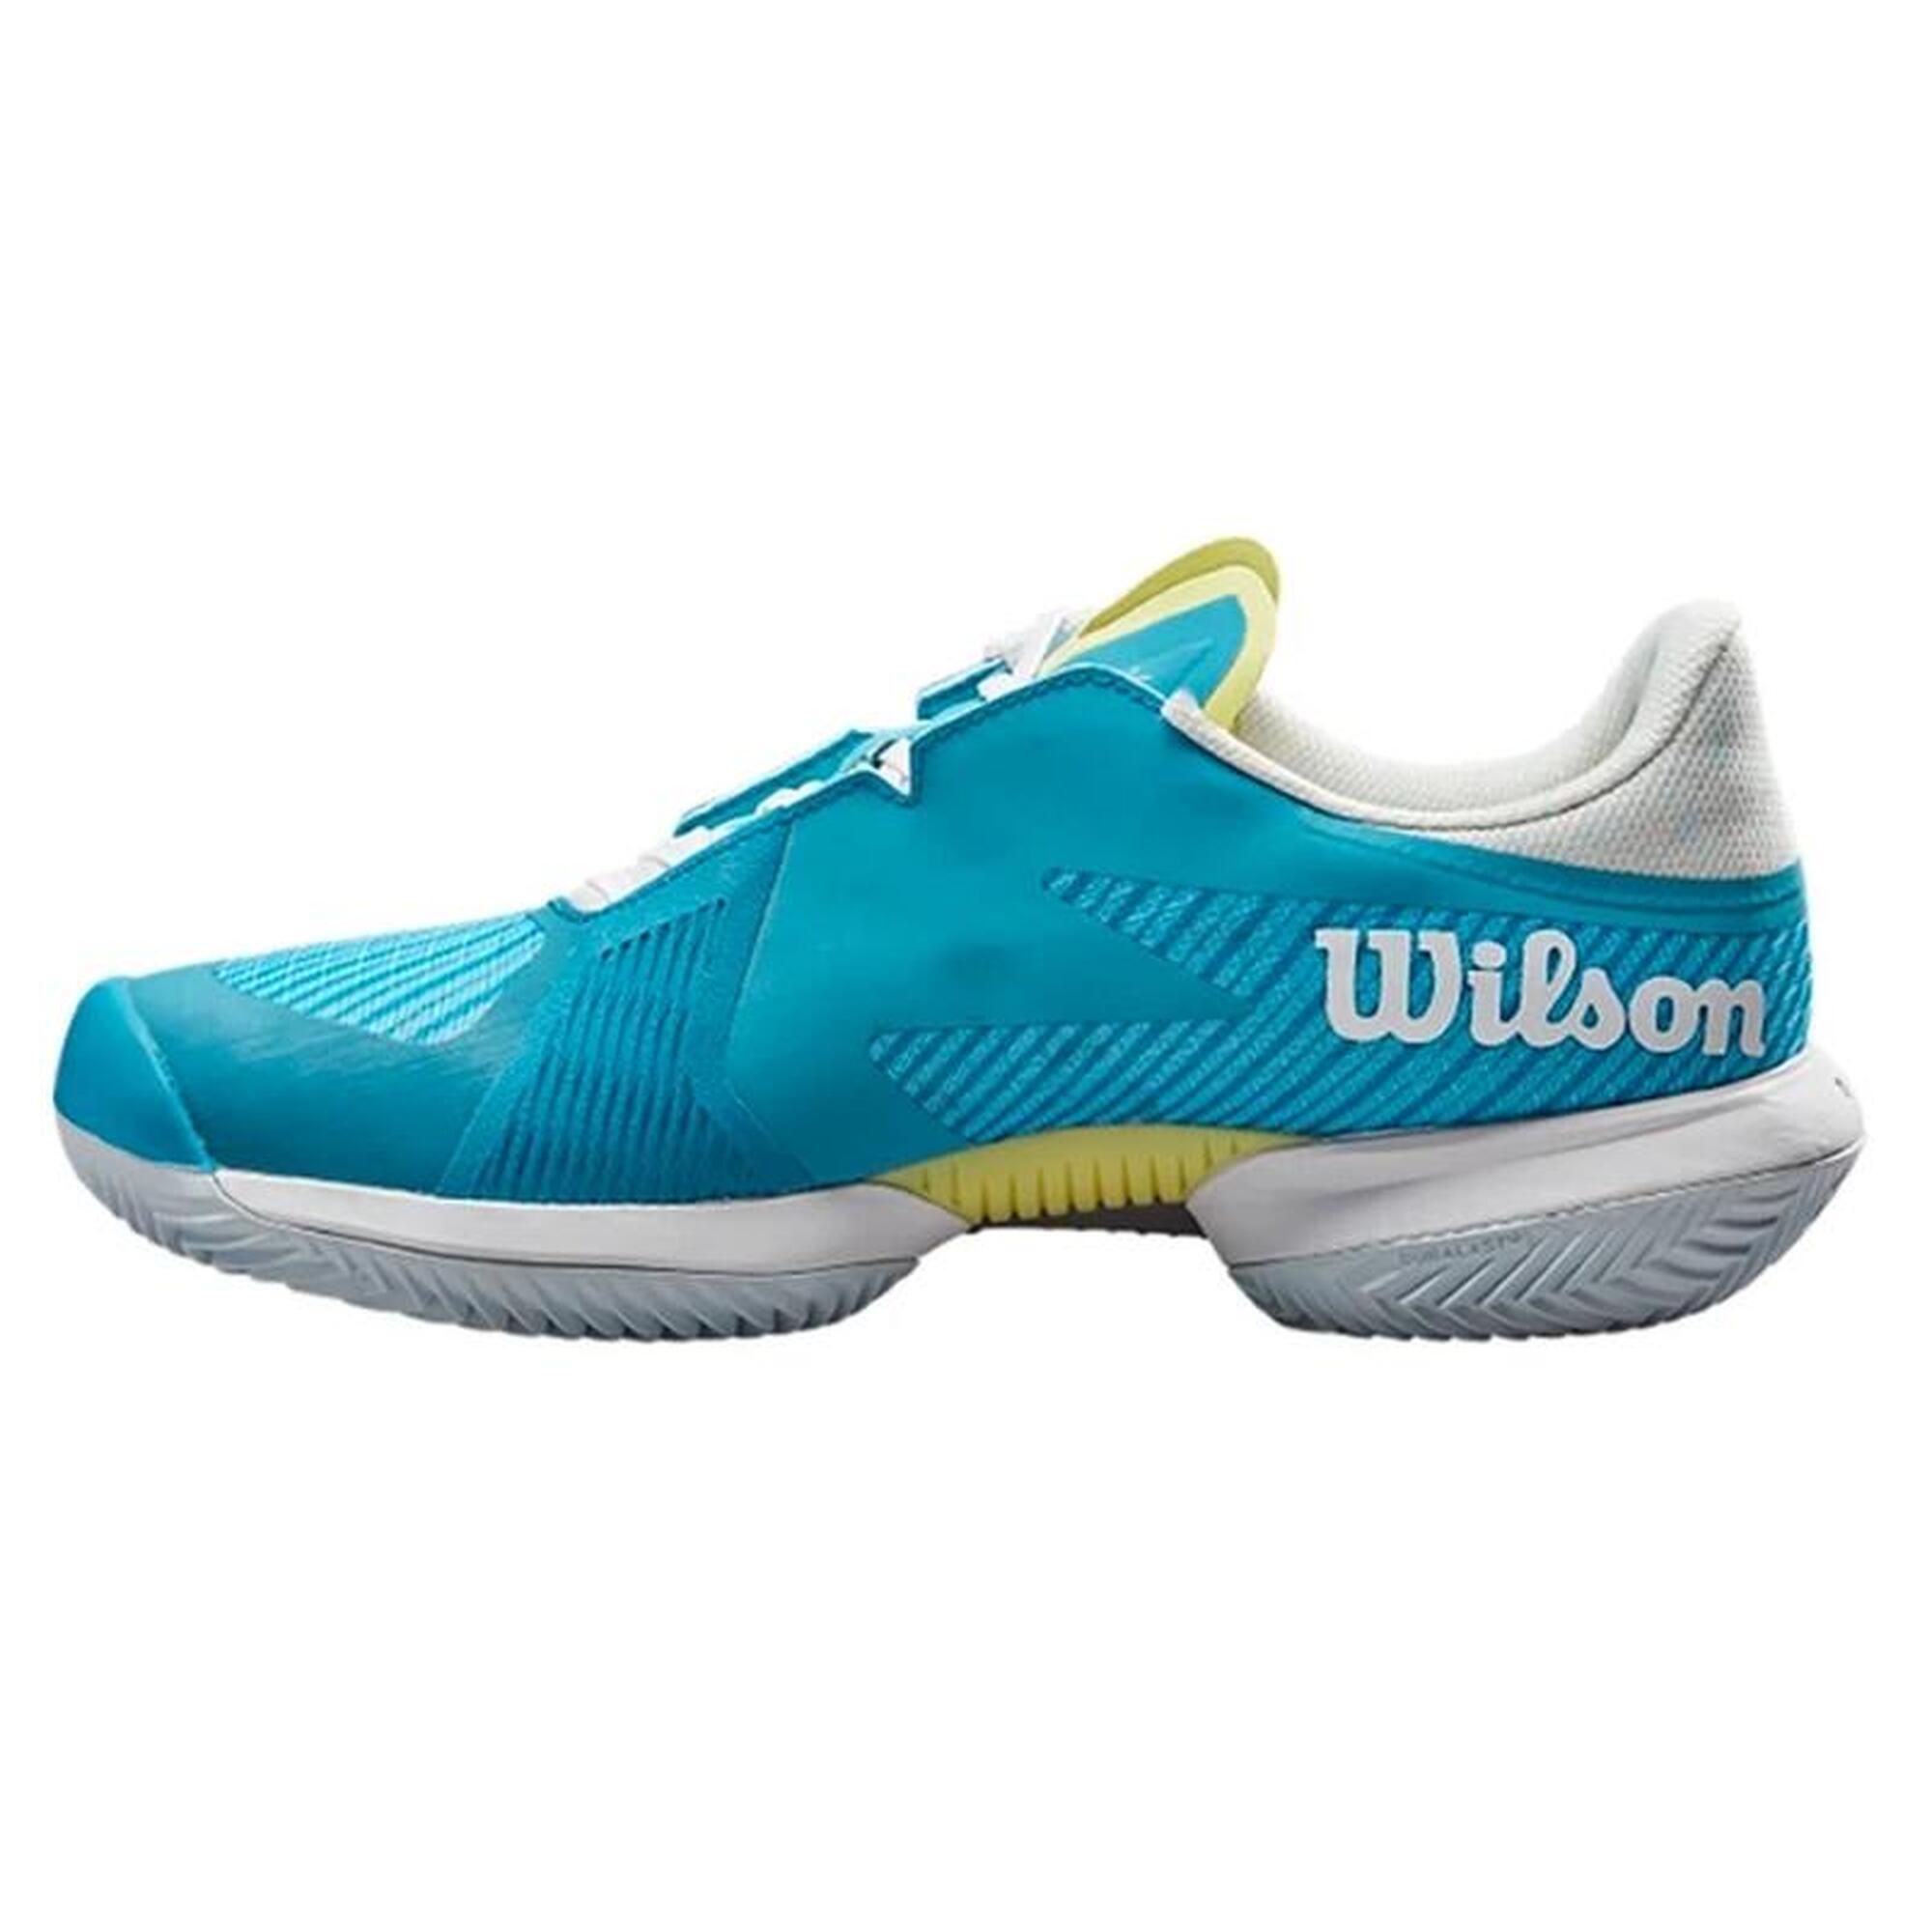 Buty tenisowe damskie Wilson Kaos Swift 1,5 clay